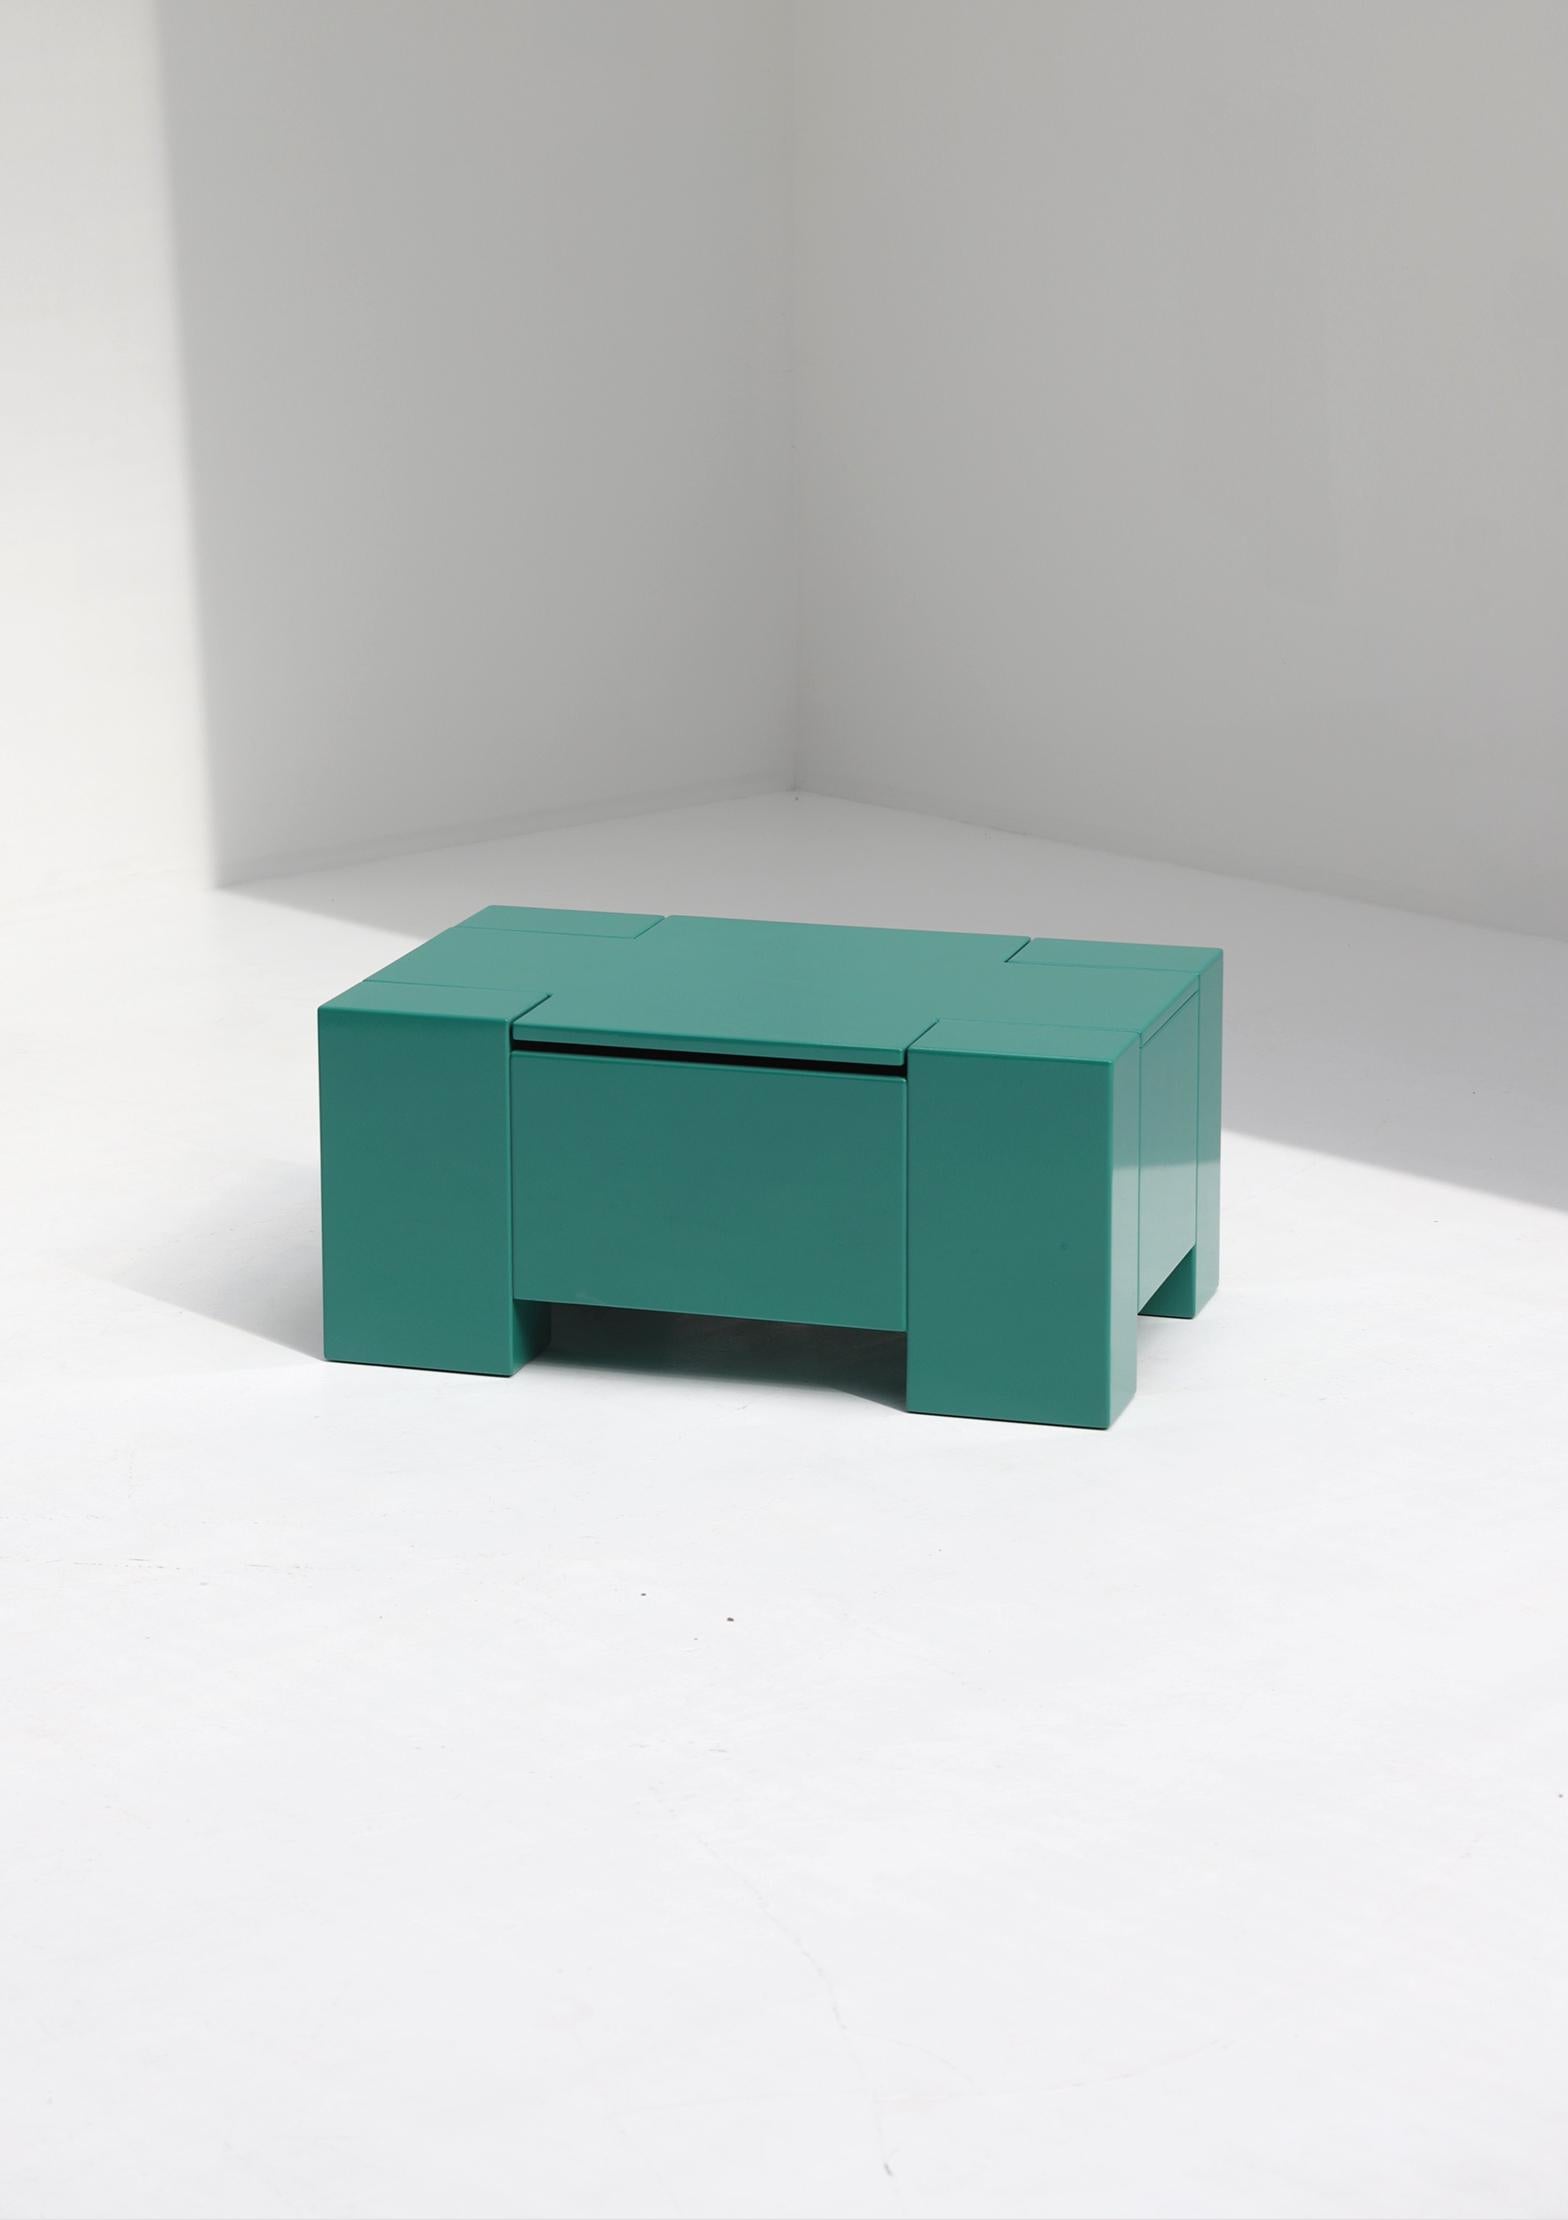 Bunte Aufbewahrungsbox, entworfen und hergestellt in den 1970er Jahren. Diese Box ist nicht nur praktisch, sondern kann auch ein farbenfrohes Detail sein, das ideal für ein (Kinder-)Zimmer, ein Wohnzimmer oder ein Büro ist. Die Box ist in einem